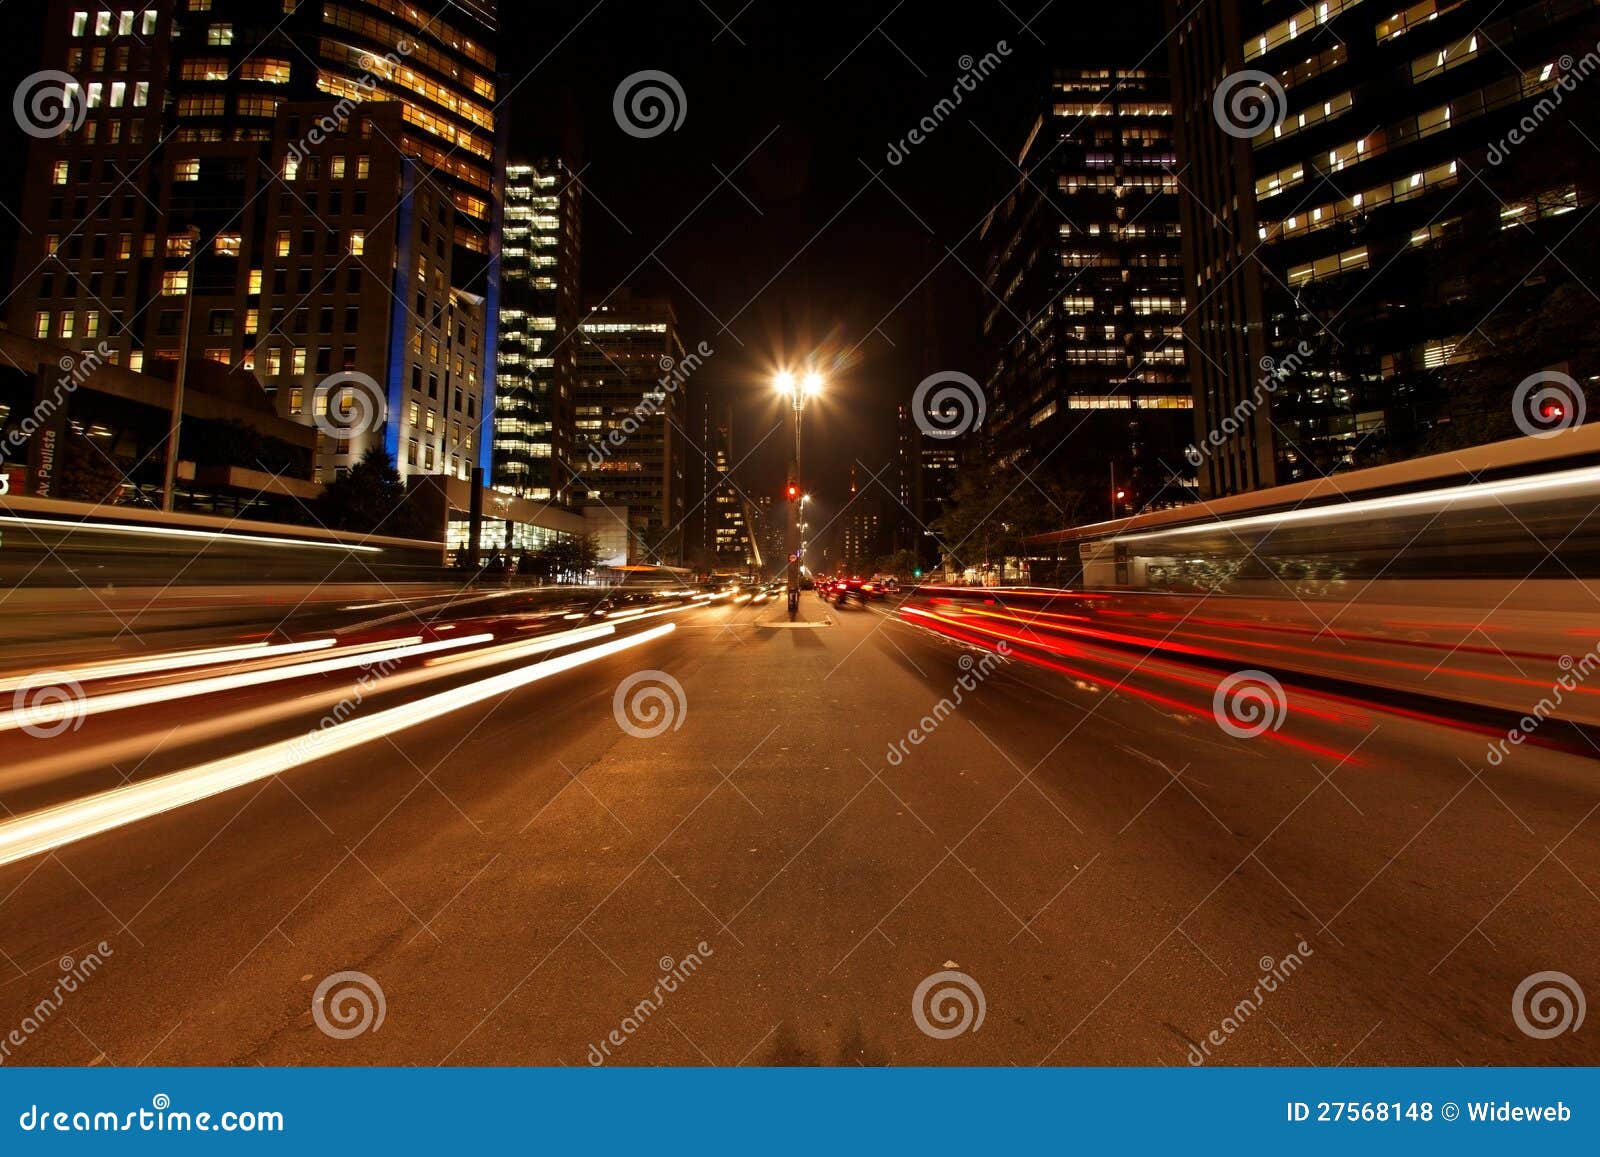 avenida paulista night traffic rush